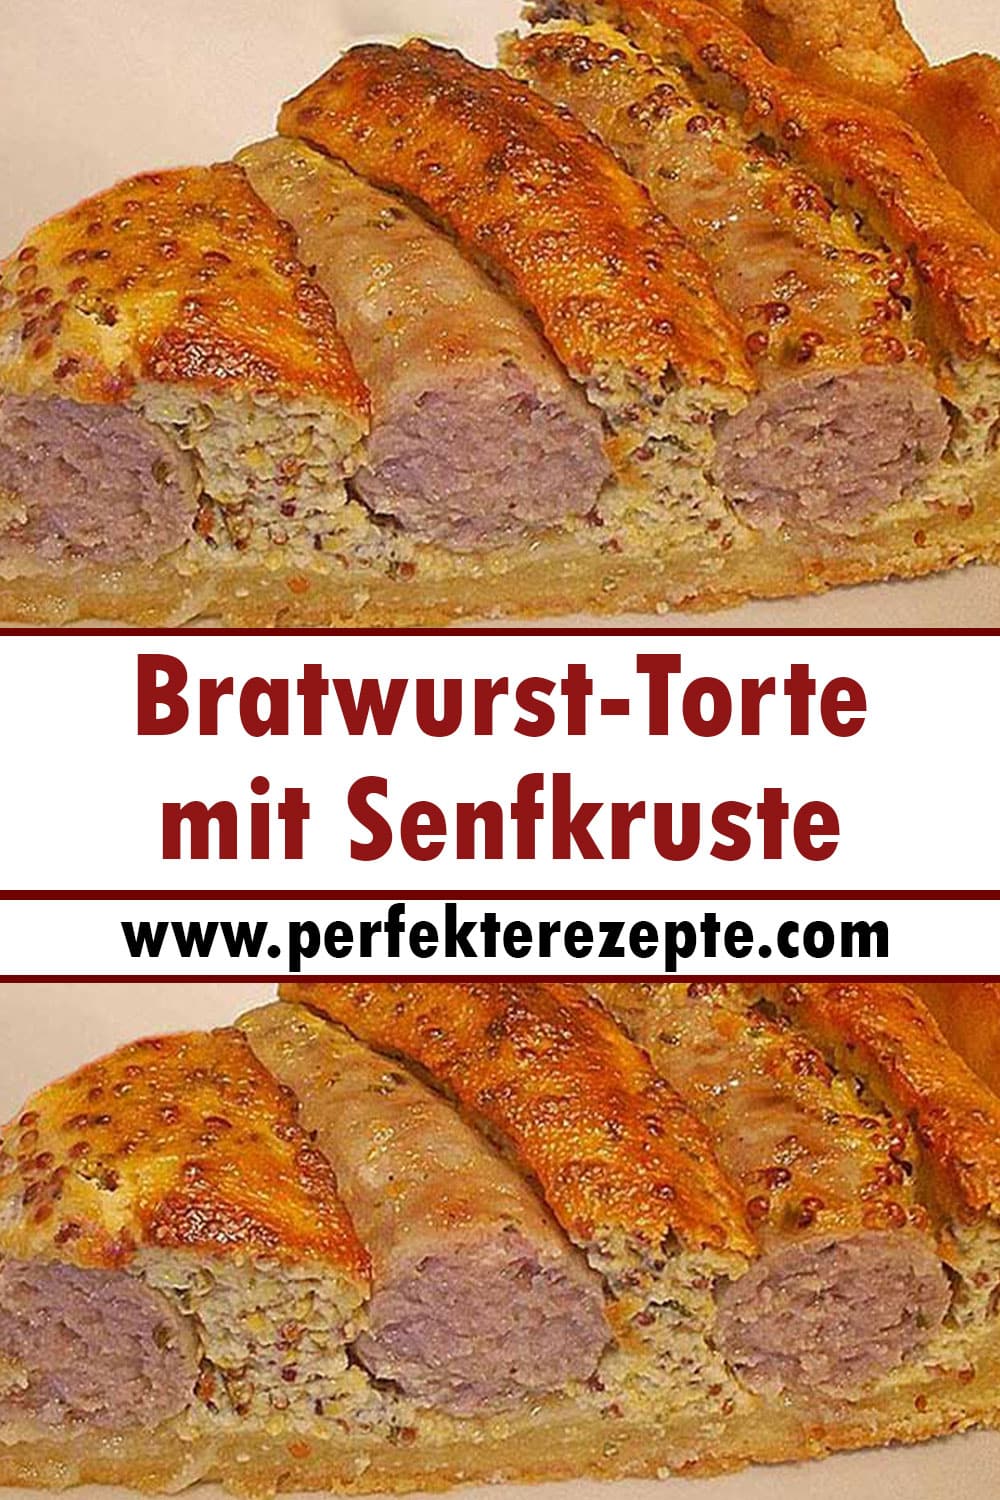 Bratwurst-Torte mit Senfkruste Rezept